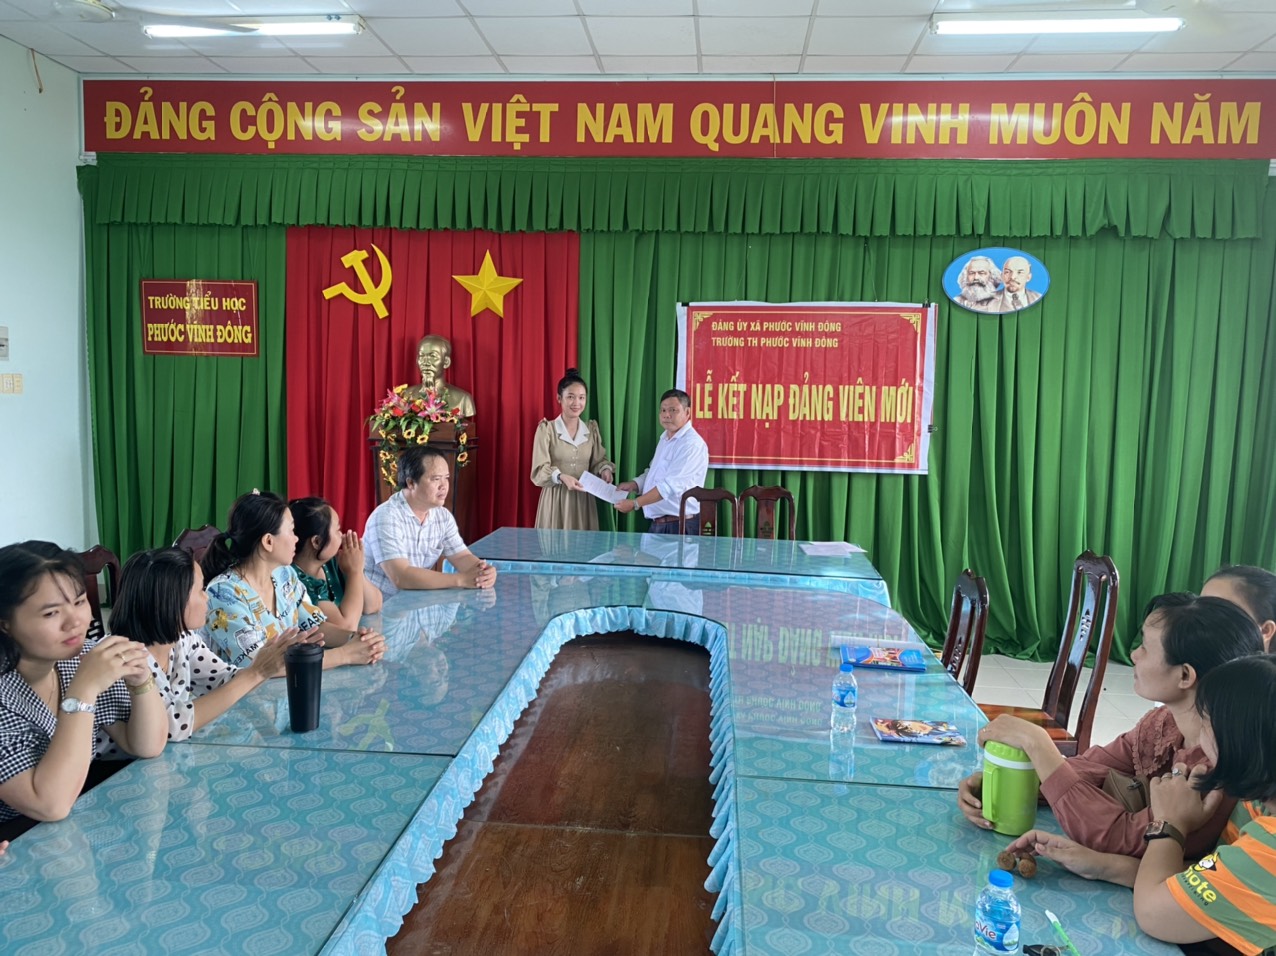 Đồng chí Trần Thị mỹ Lan nhận Quyết định kết nạp đảng